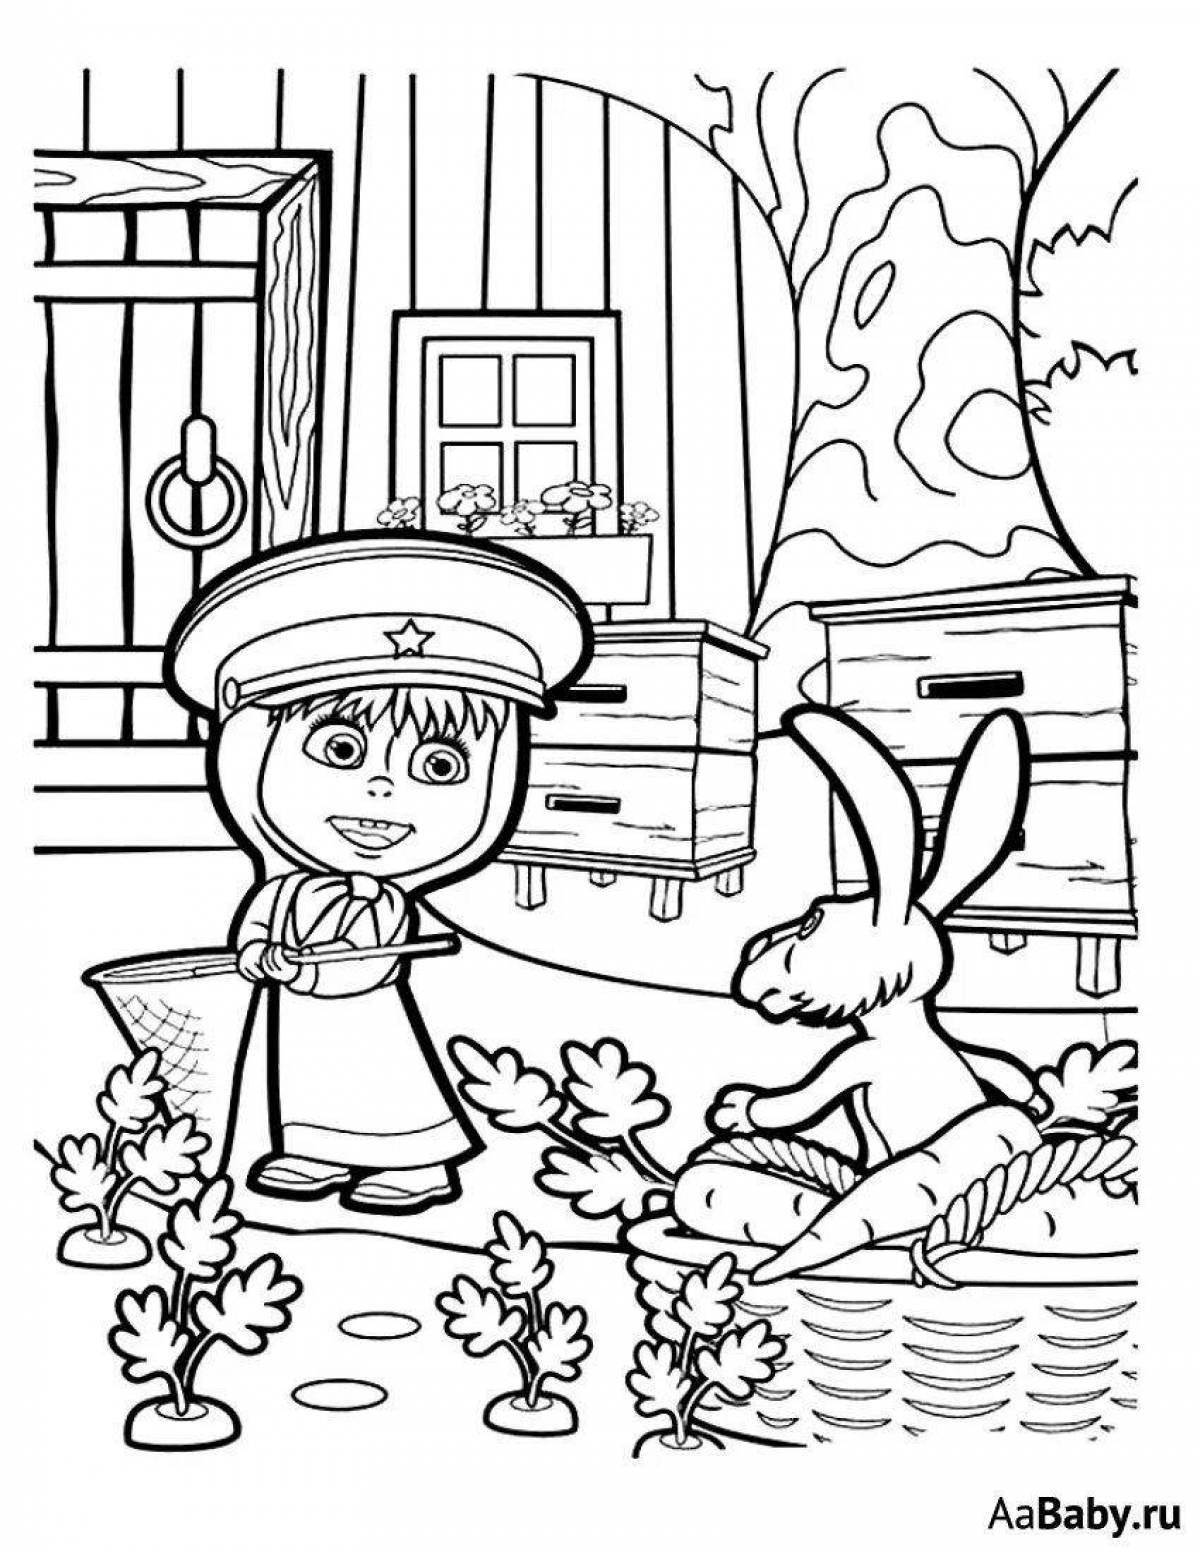 Sweet bunny-masha and bear coloring book